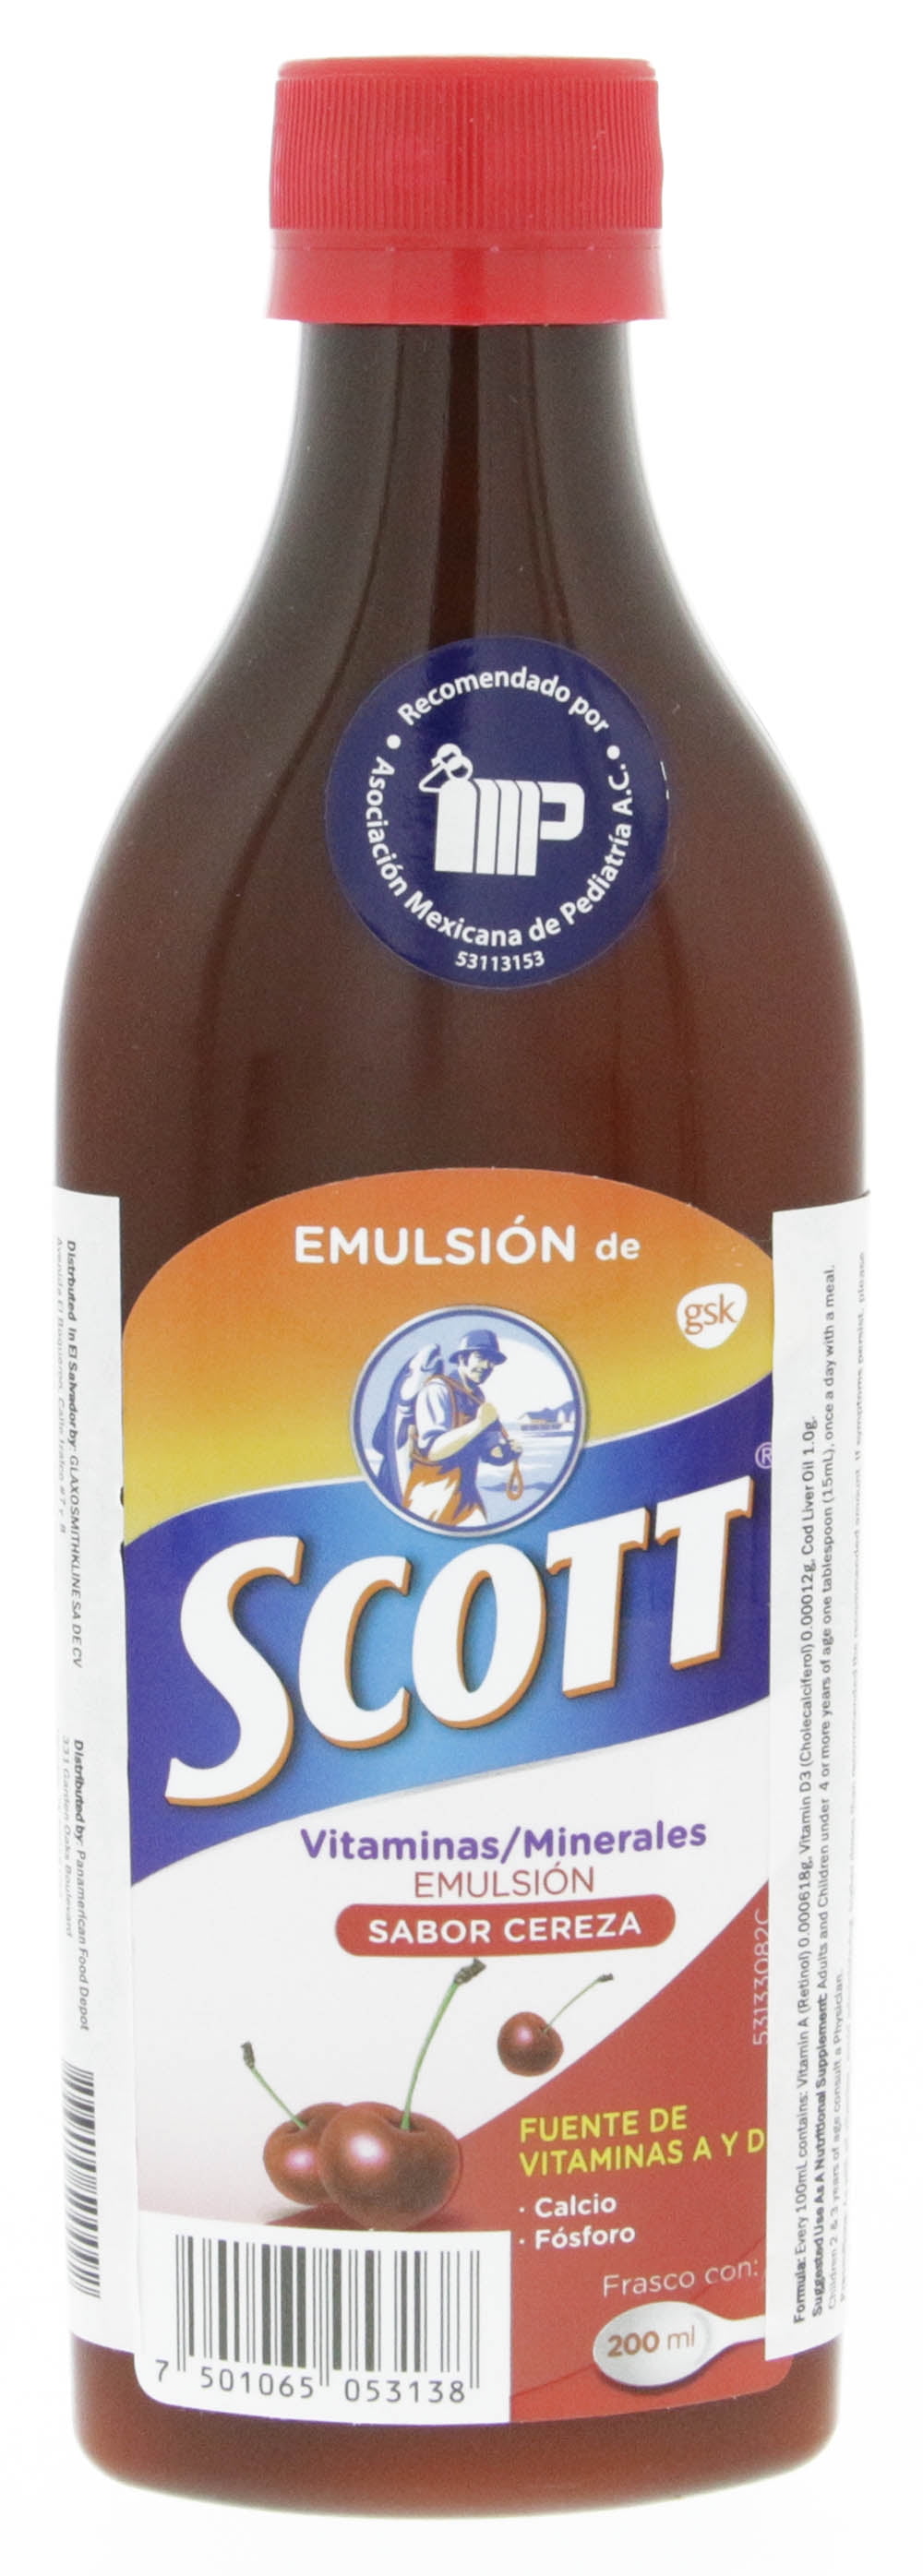 Emulsion de Scott Multivitam nico Cereza 200 ml